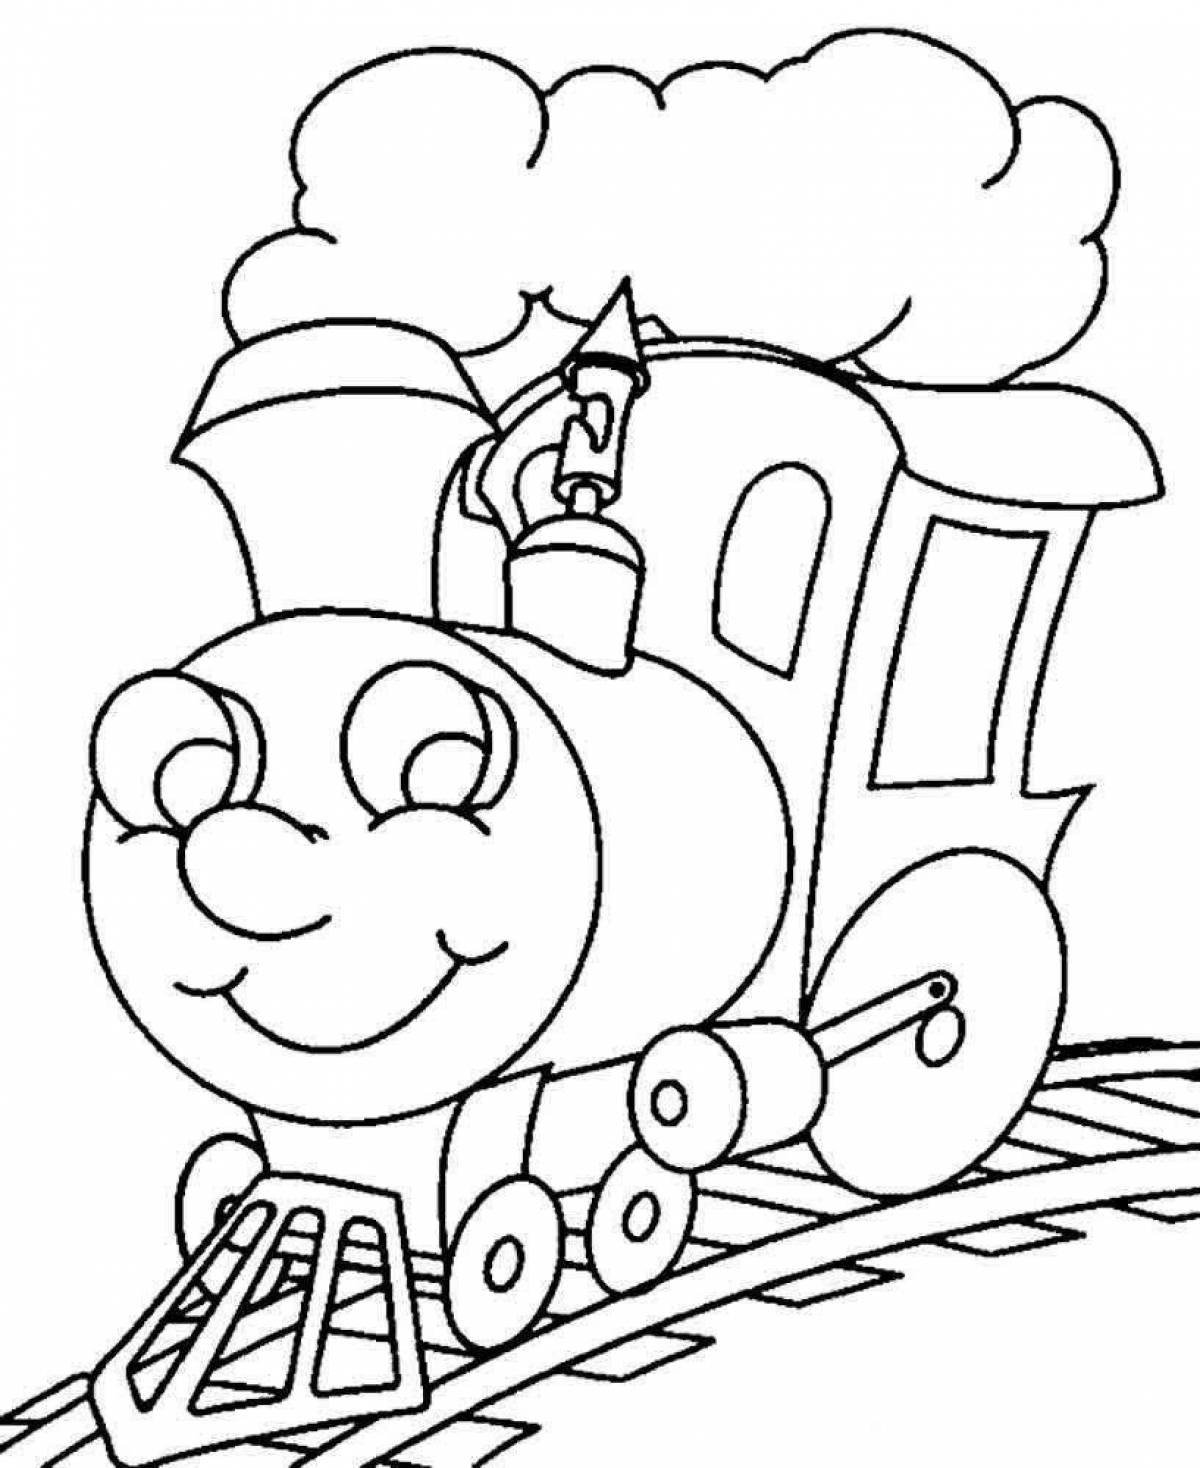 Игривая страница раскраски поезда для детей